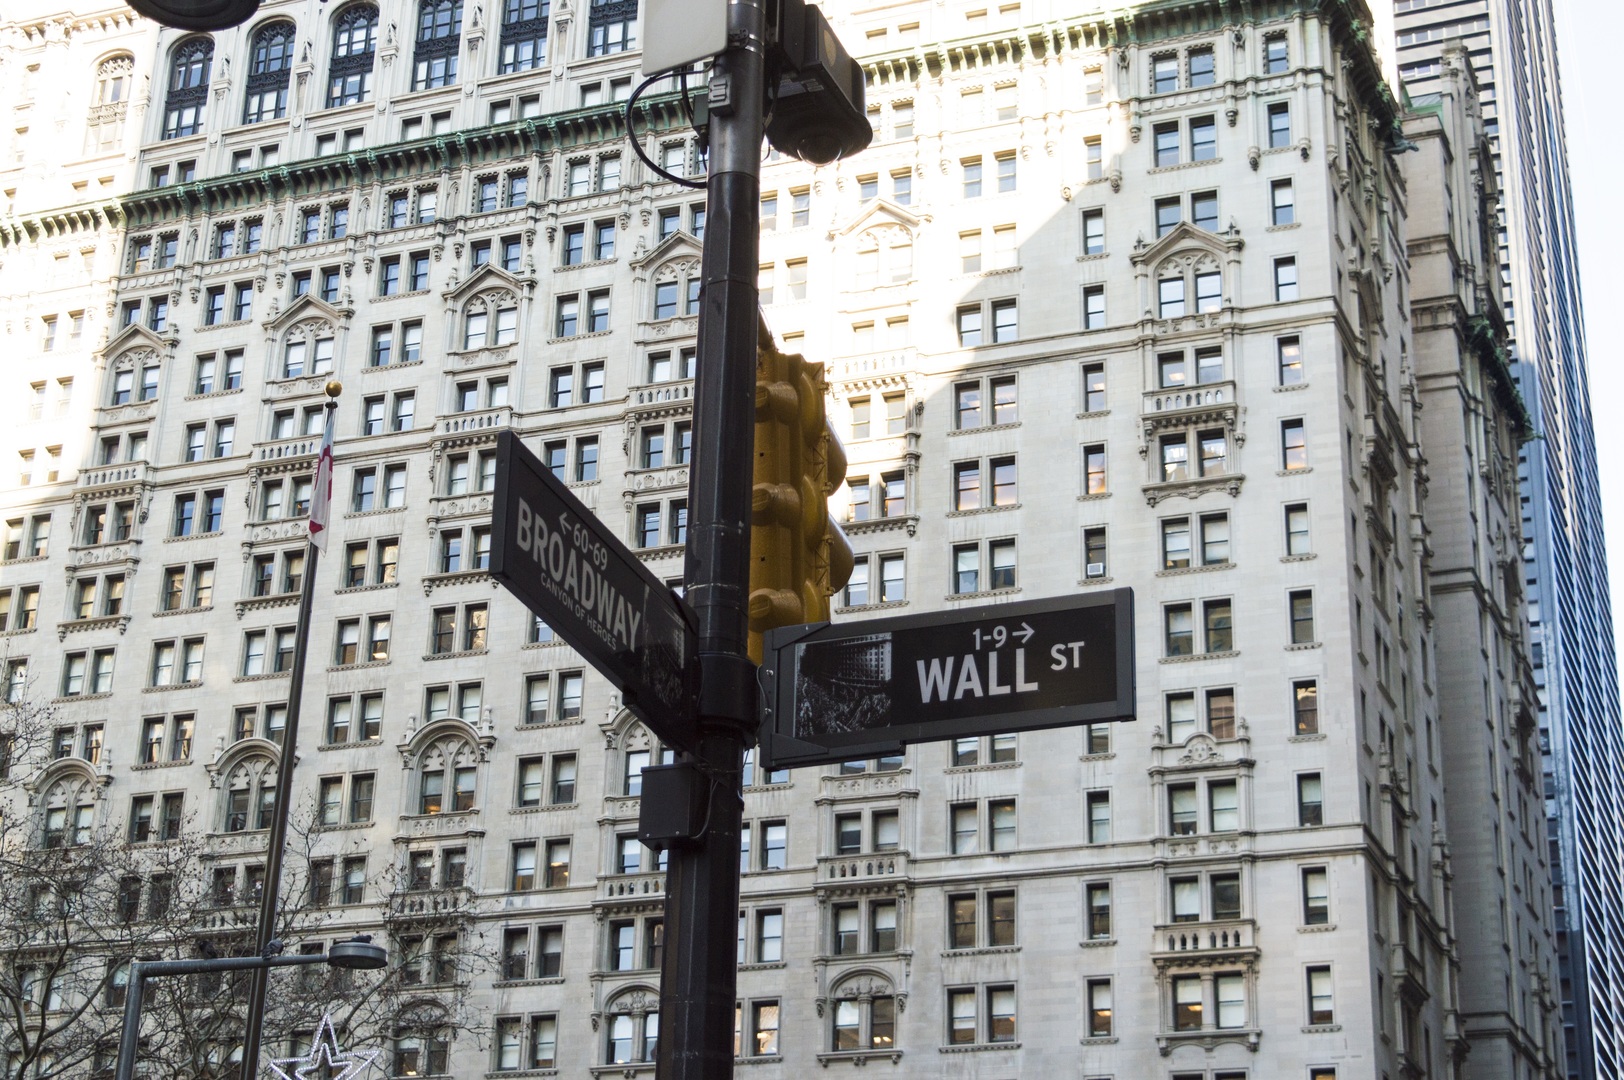 New York Wall Street - Technical analysis, trend notes fir the financial markets